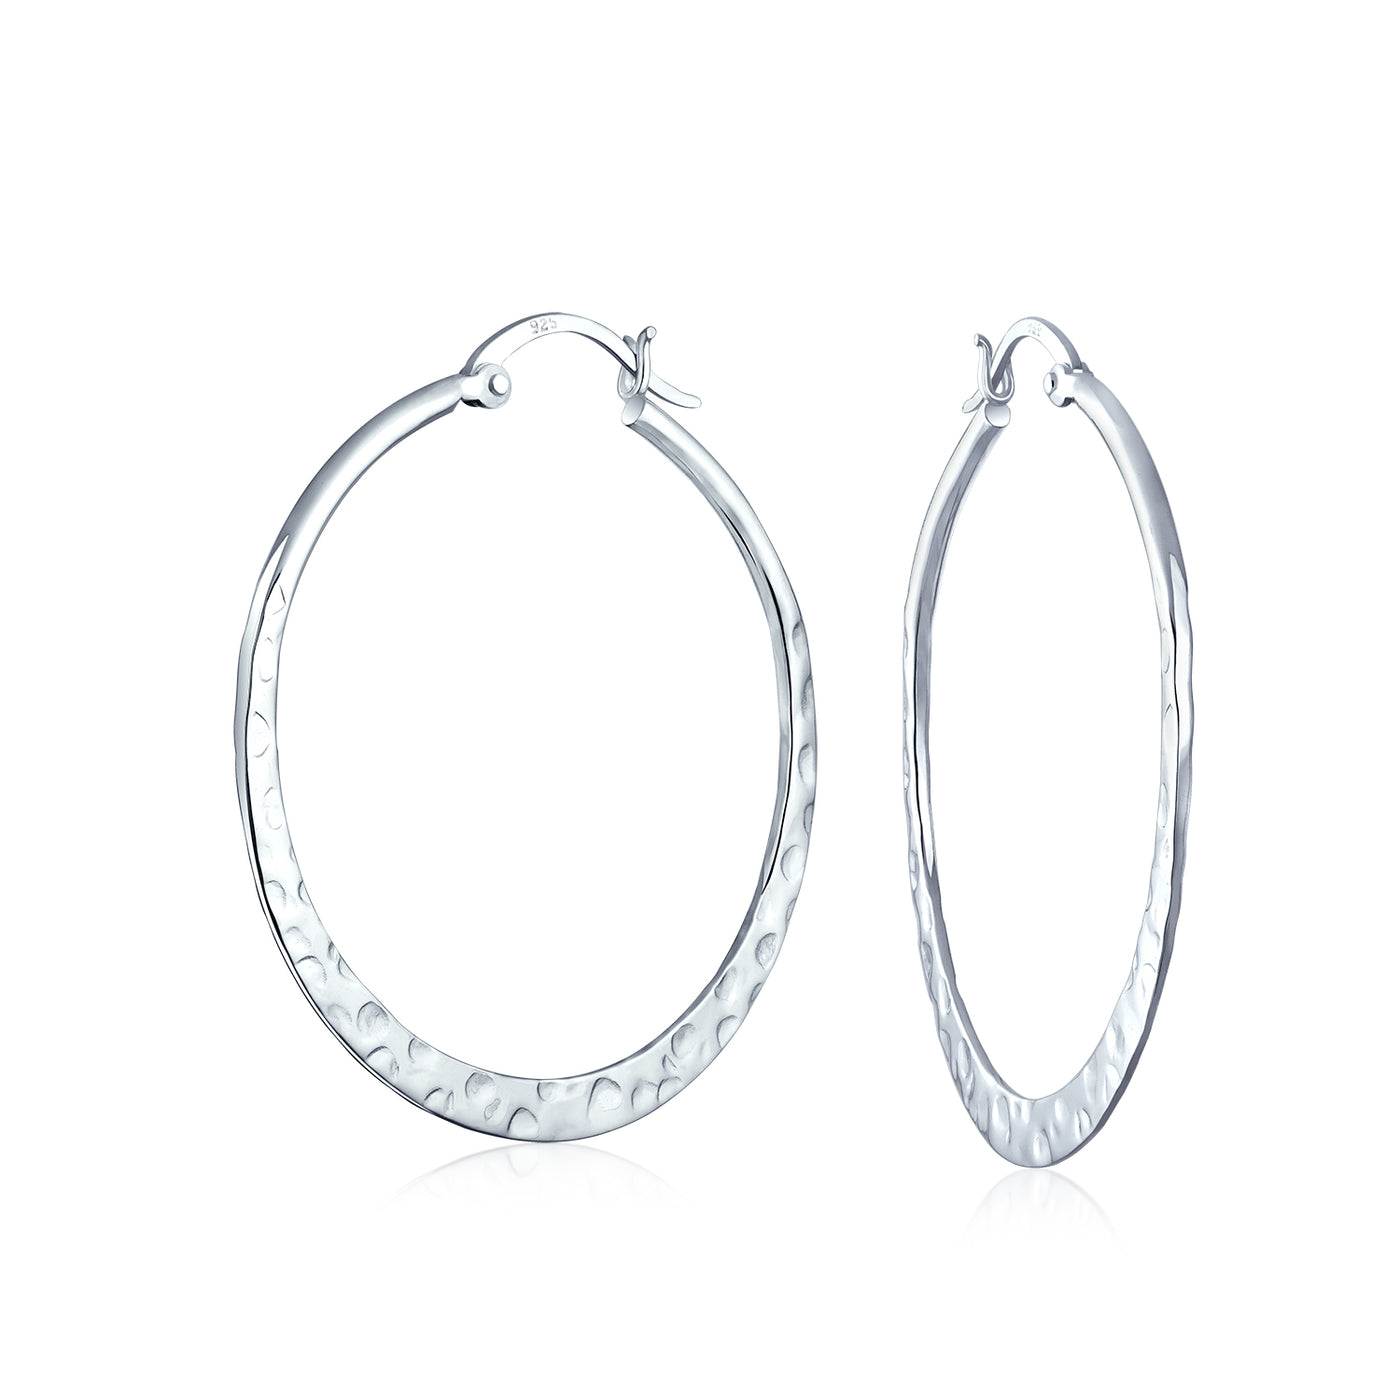 Boho Hammered Flat Hoop Earrings .925 Sterling Silver 1 5 Inch Dia